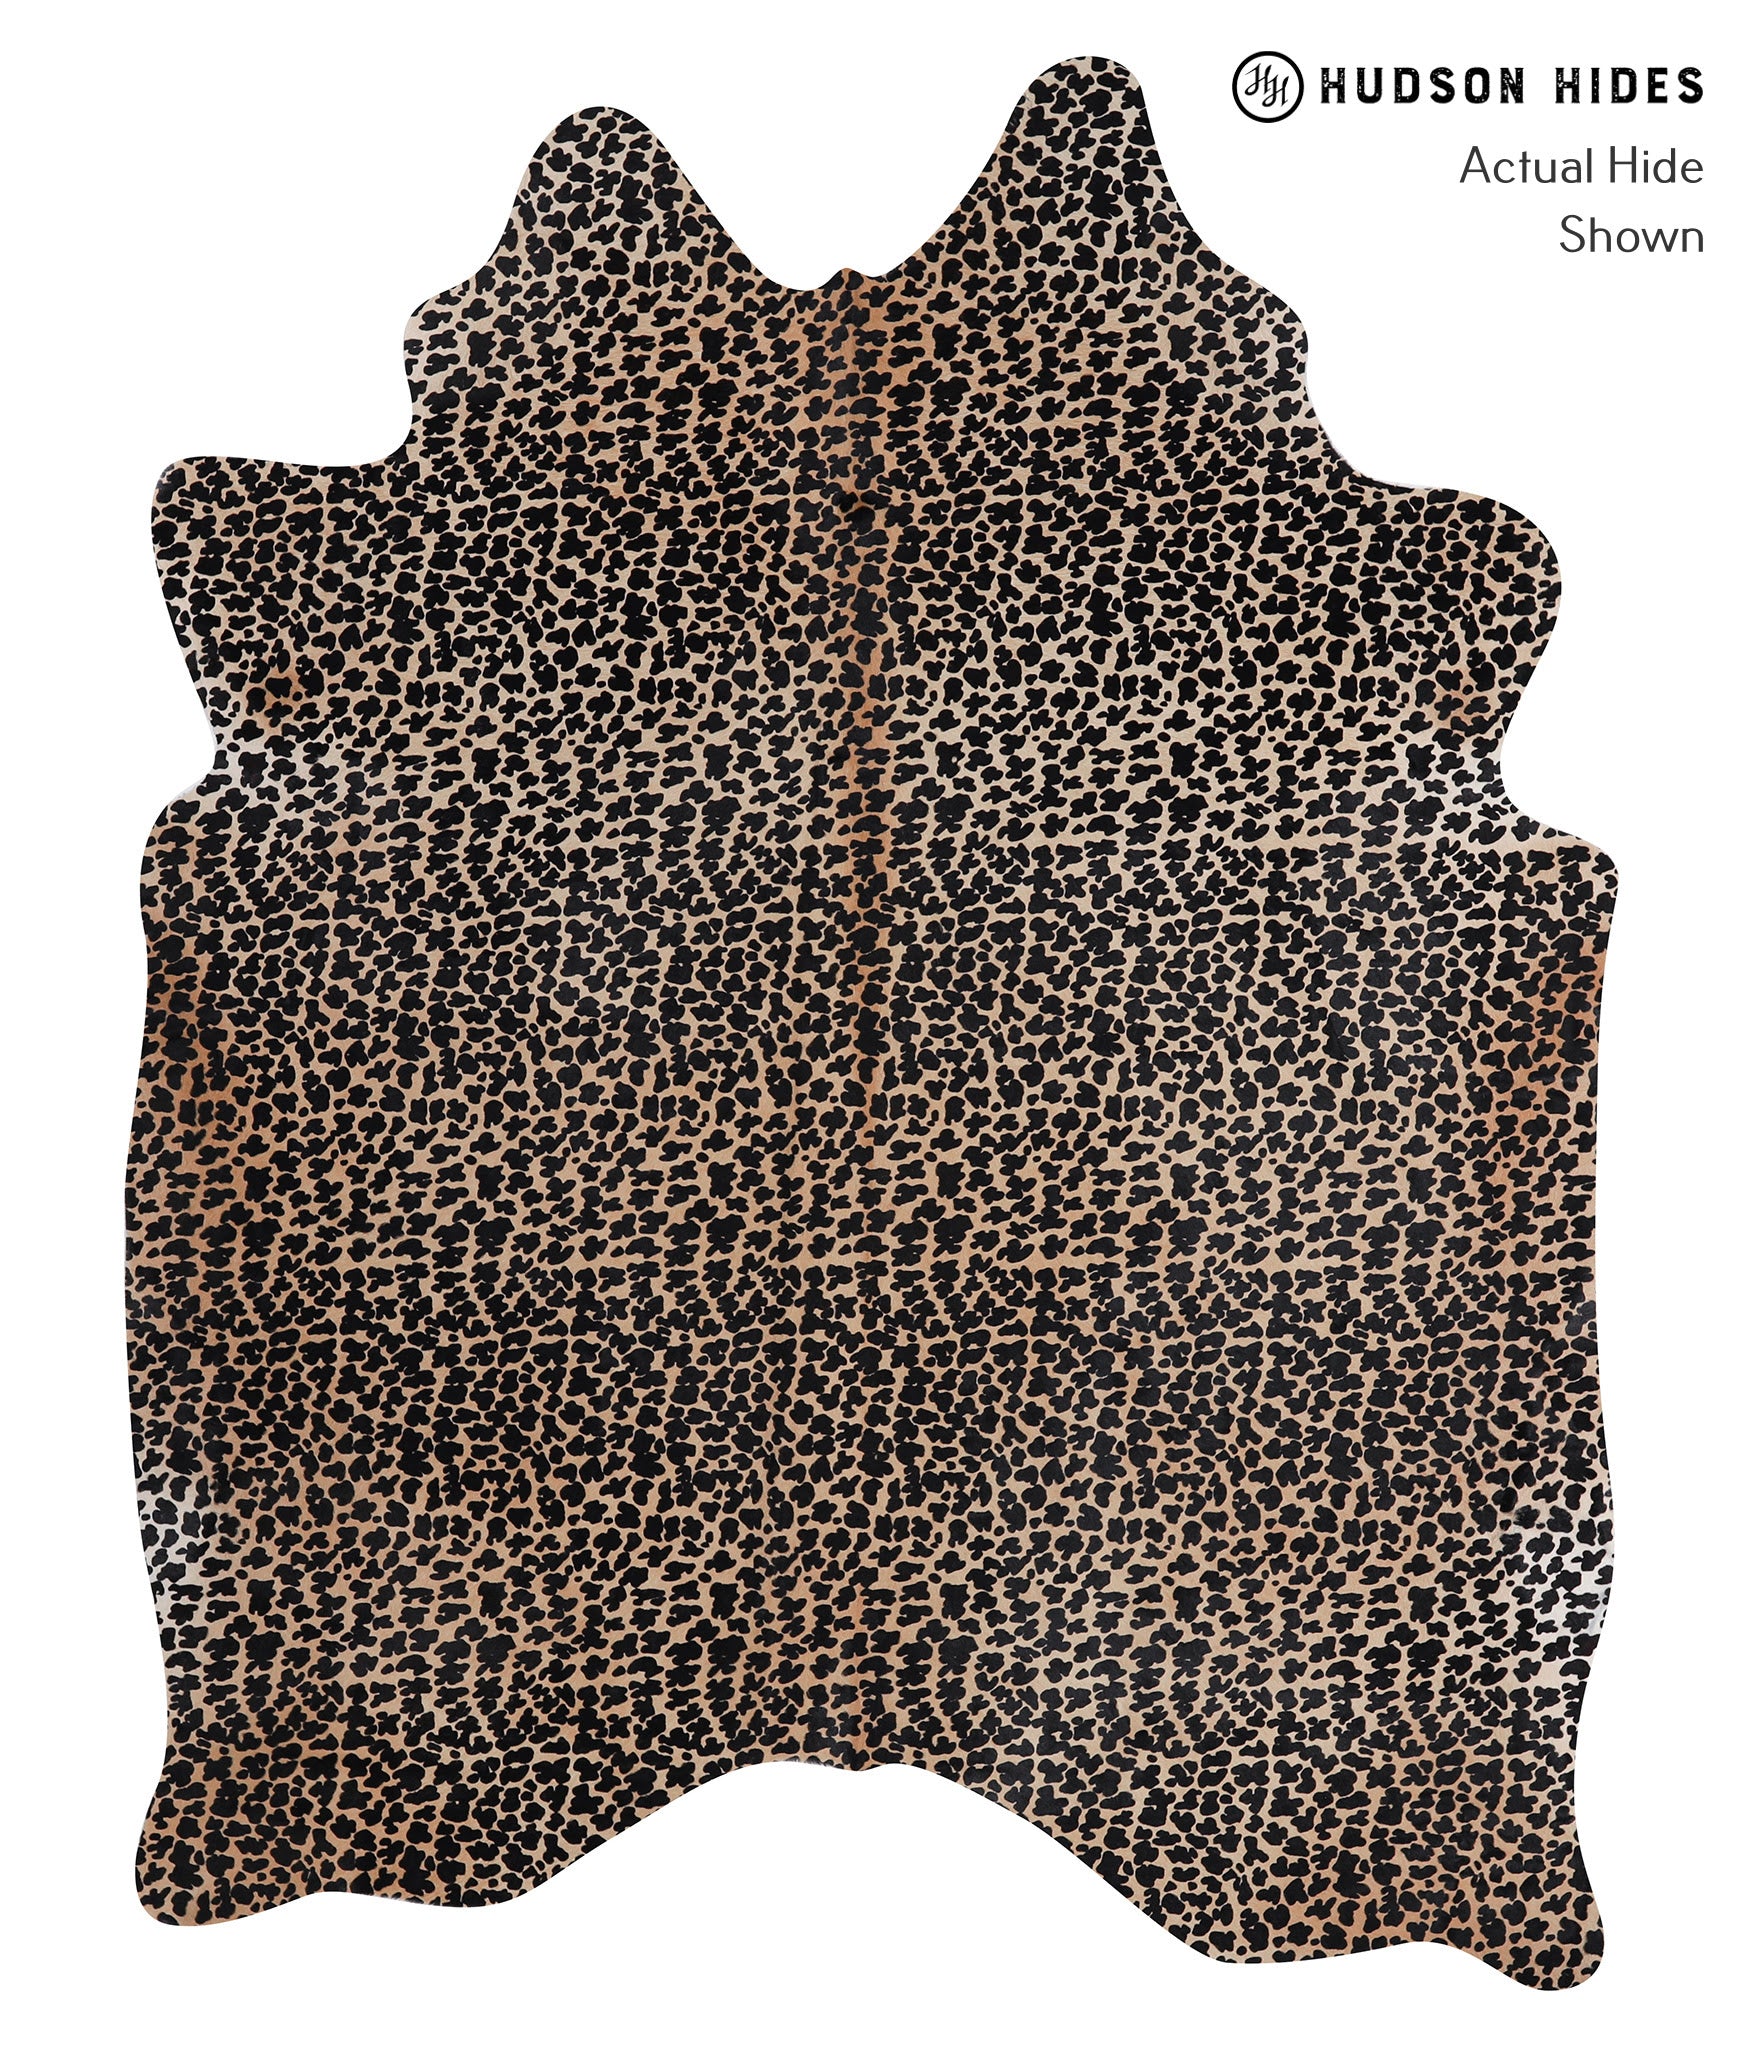 Animal Print Cowhide Rug #A12832